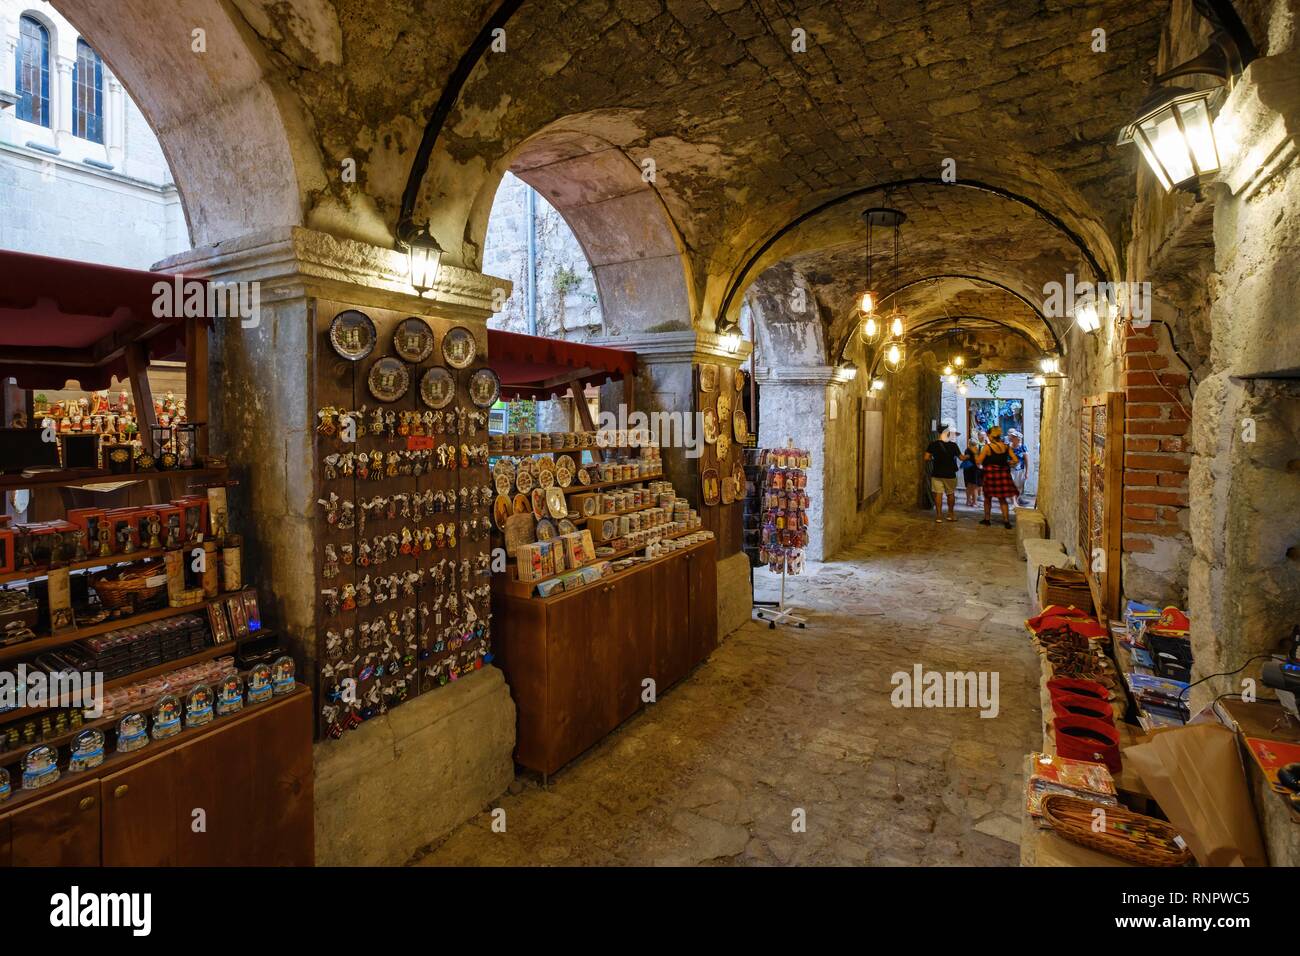 Bazaar, Old Town Kotor, Montenegro Stock Photo